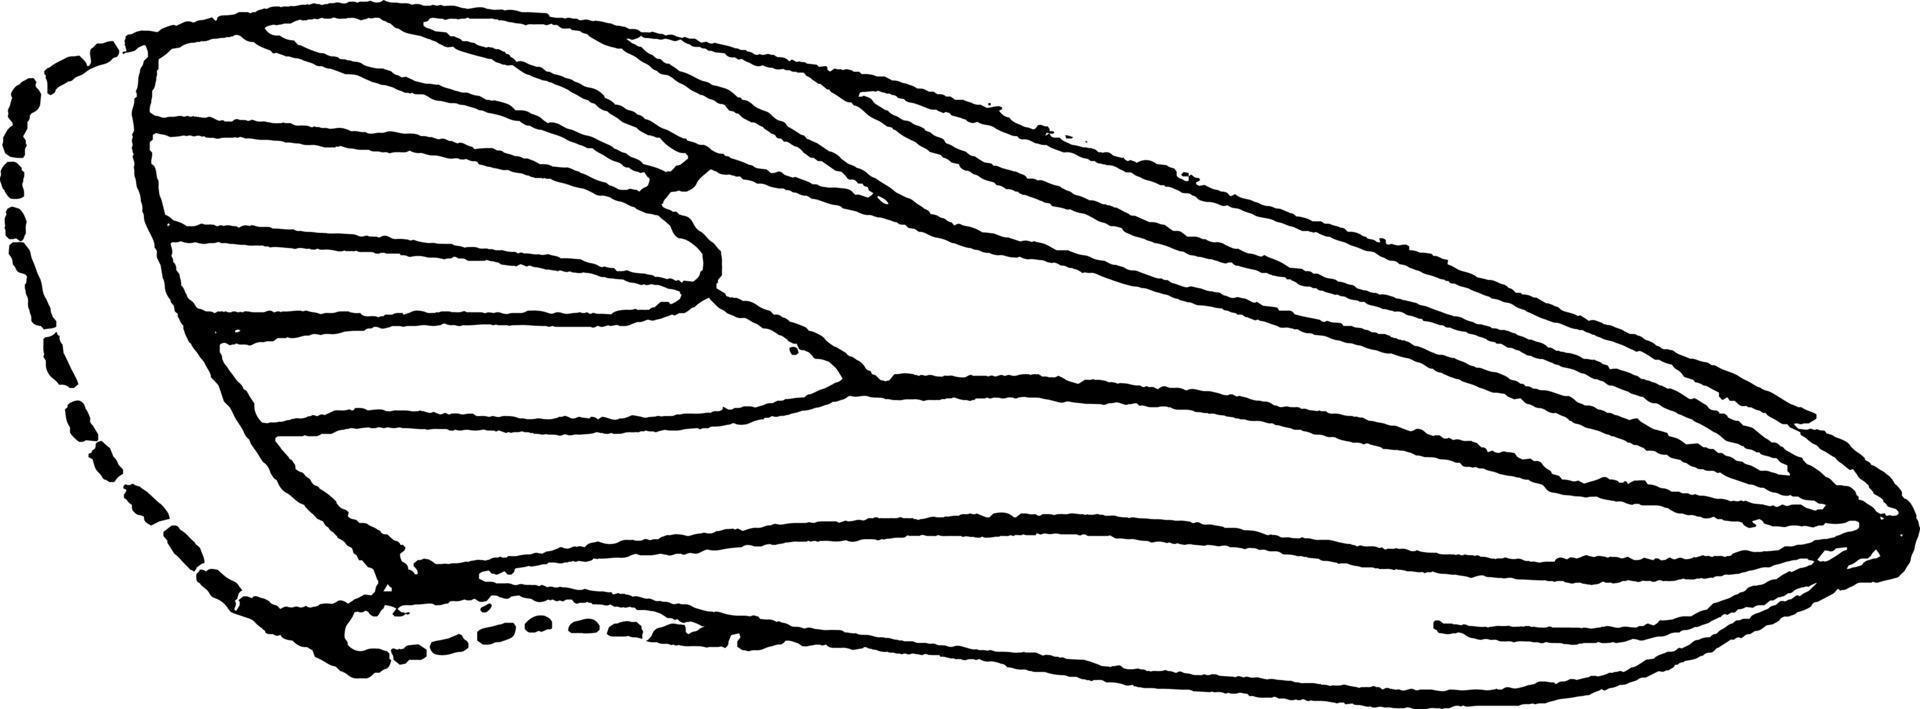 teigne de la farine ou ephestia kuhniella, illustration vintage. vecteur